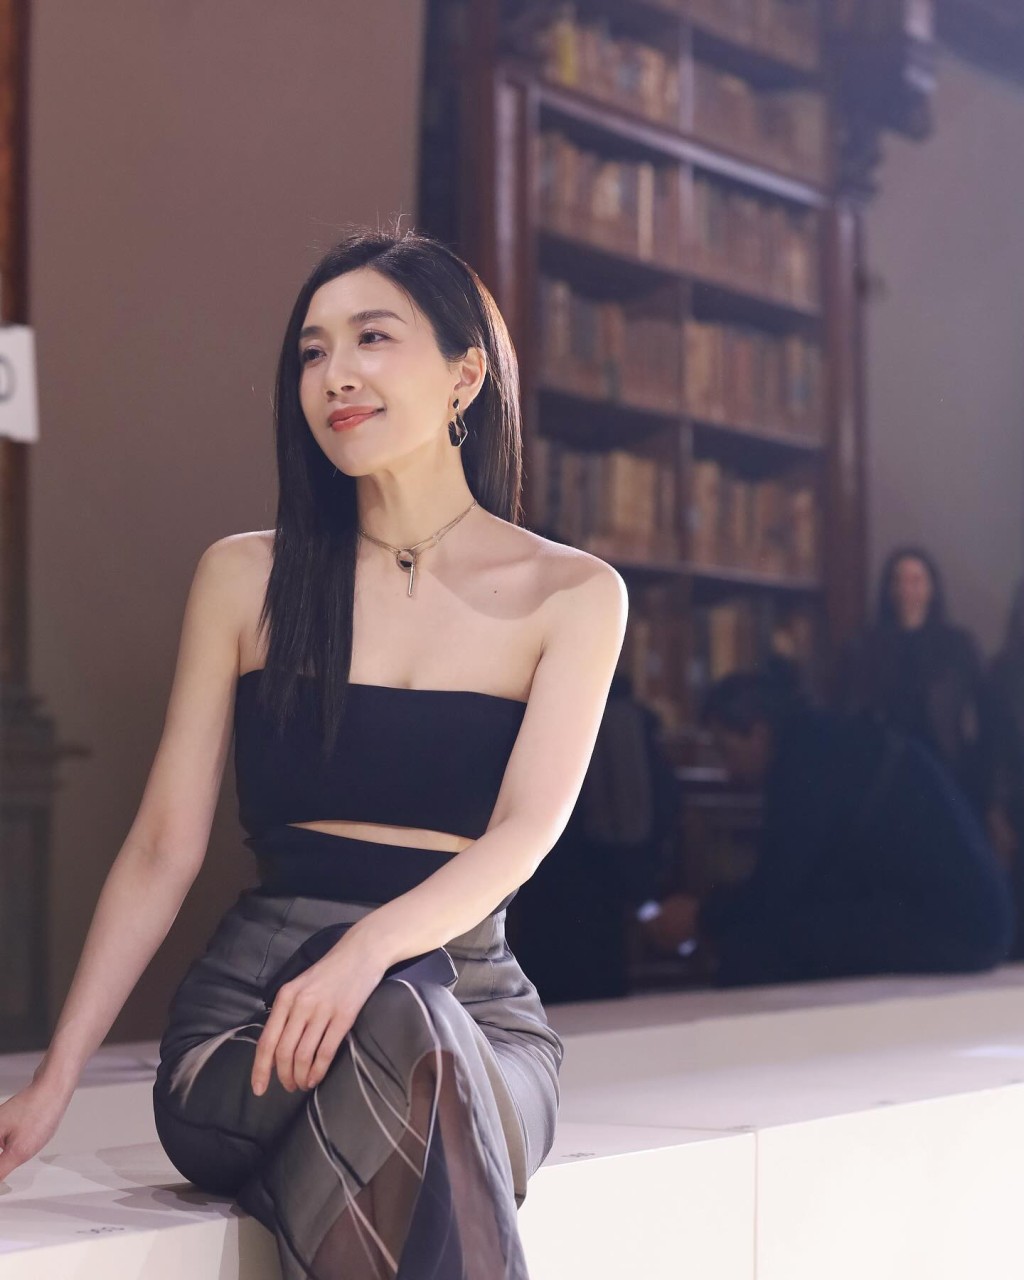 黃智雯日前於IG分享出席米蘭時裝展的靚相。